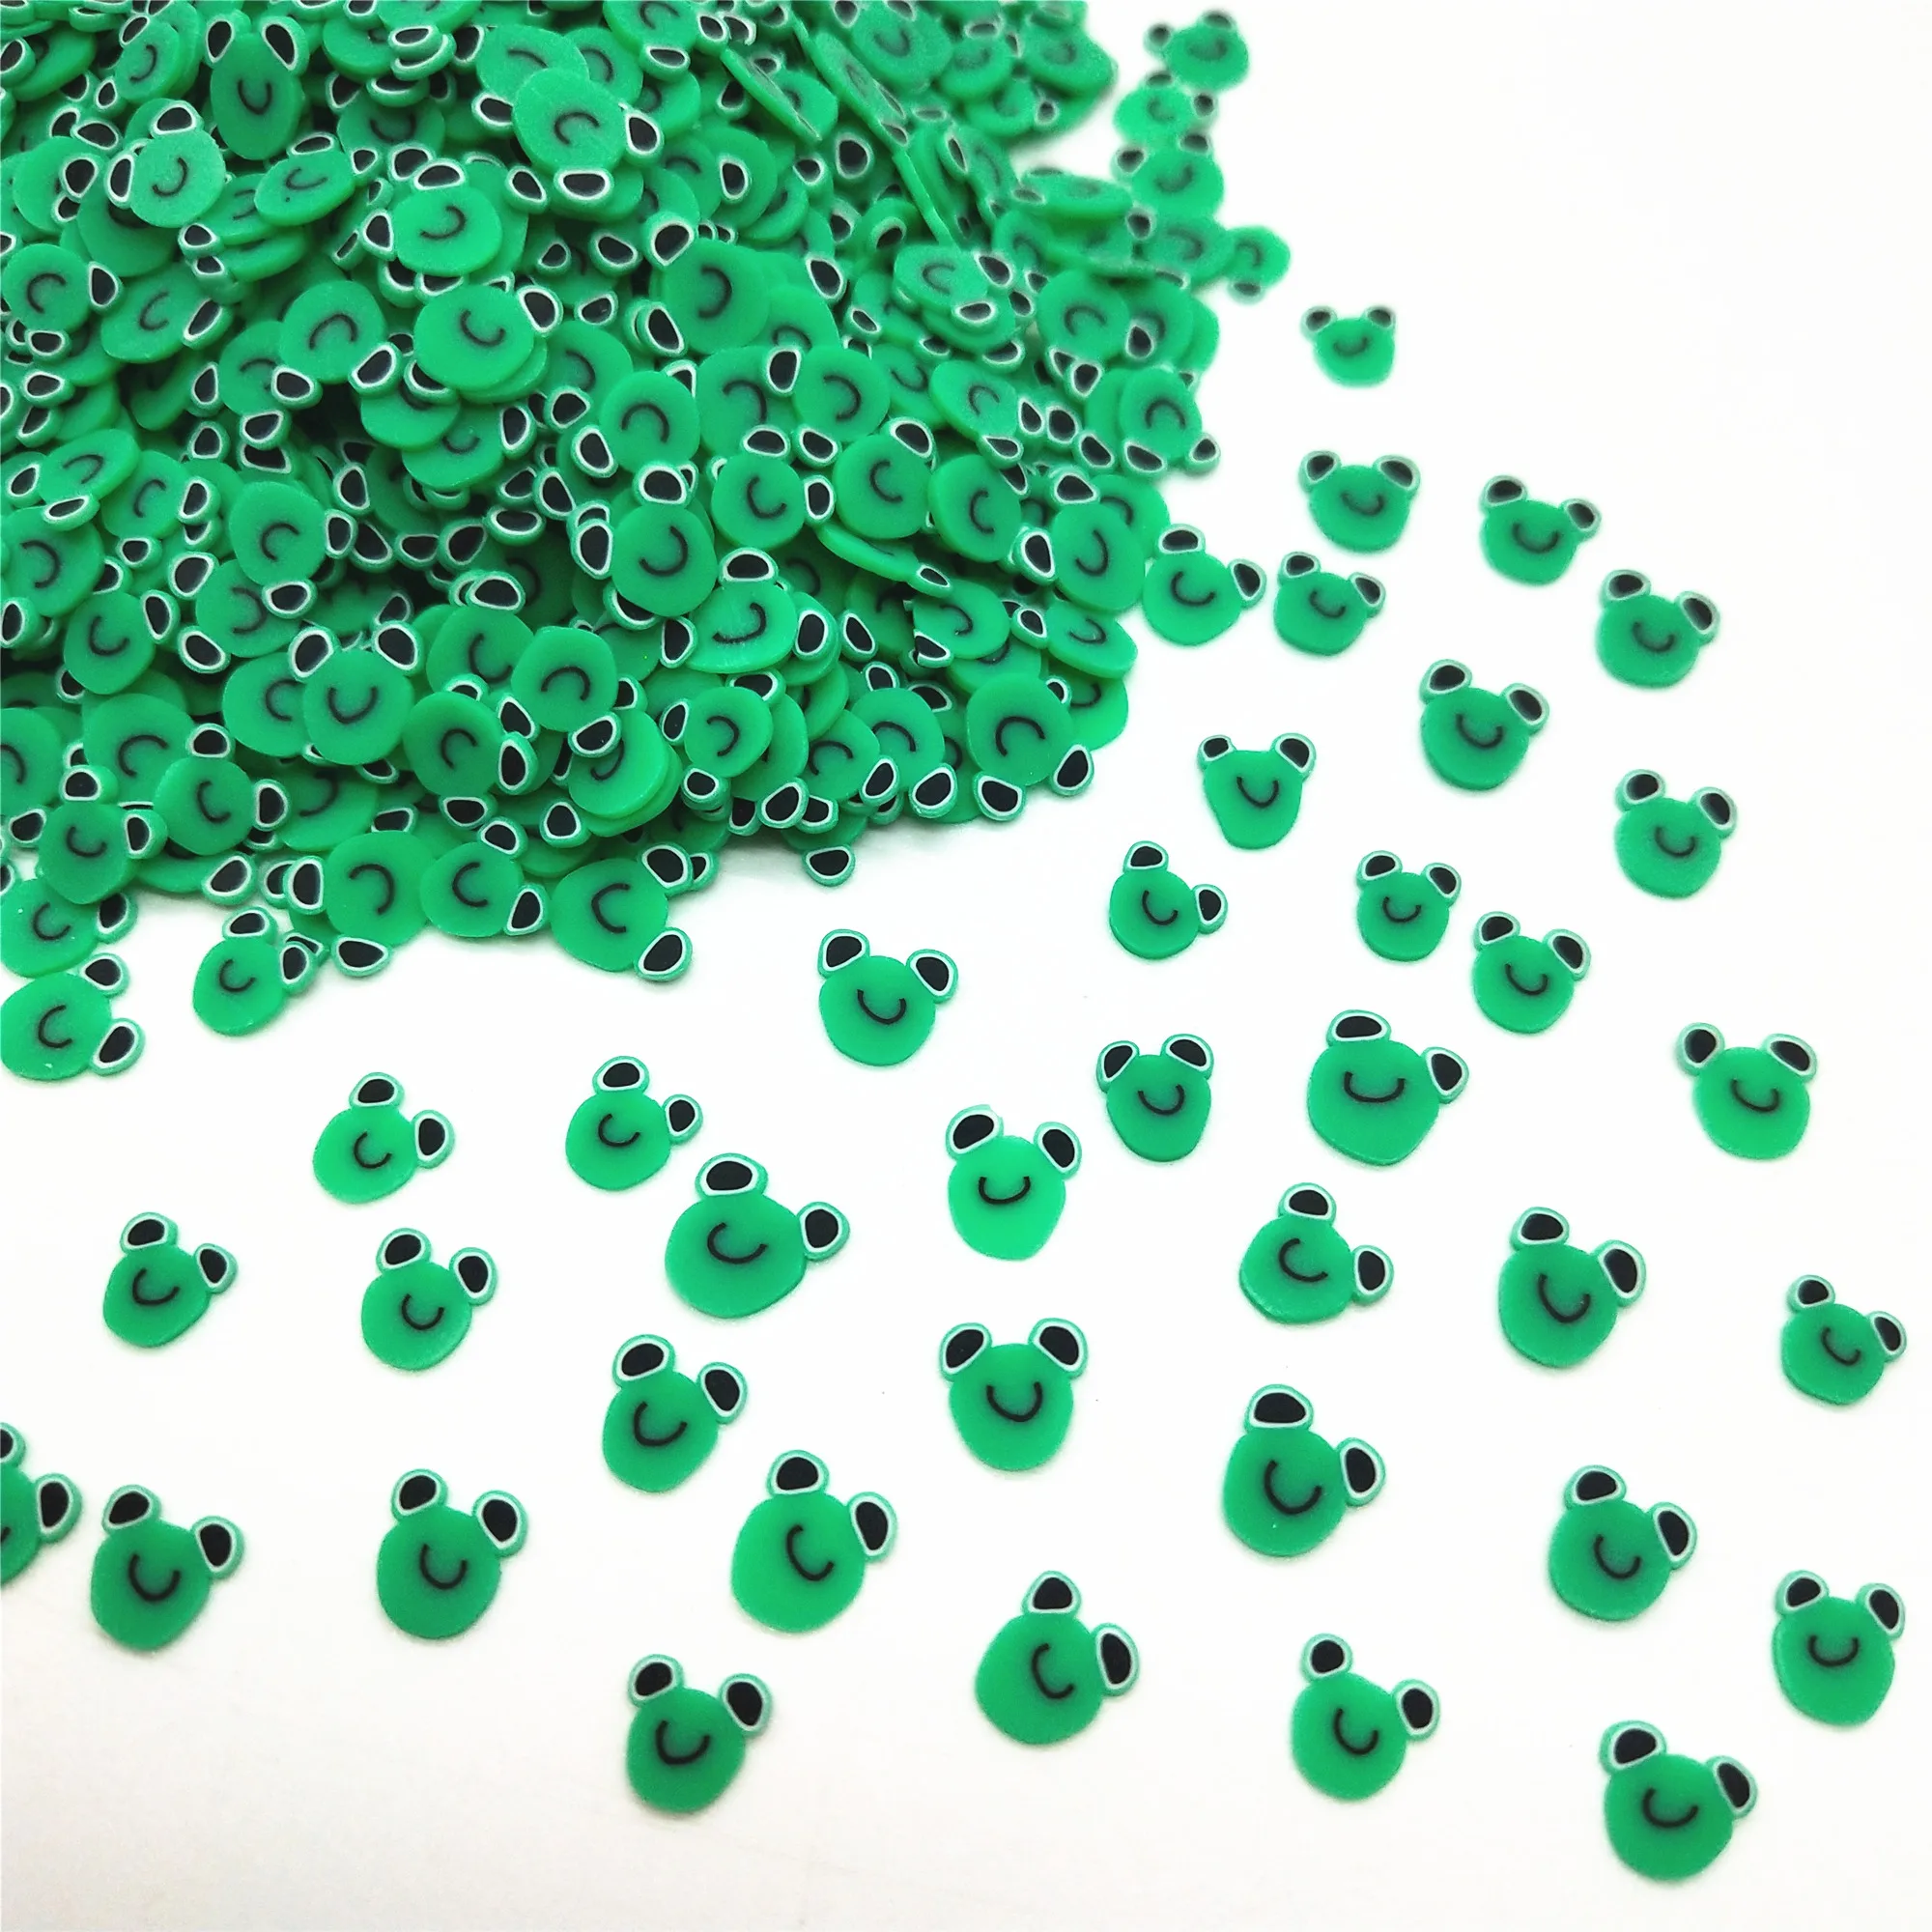 Bajo costo 20 g/lote rana verde de arcilla de polímero rebanadas para manualidades DIY 5mm de plástico Klei barro partículas Animal arcillas dV5bjG0jb